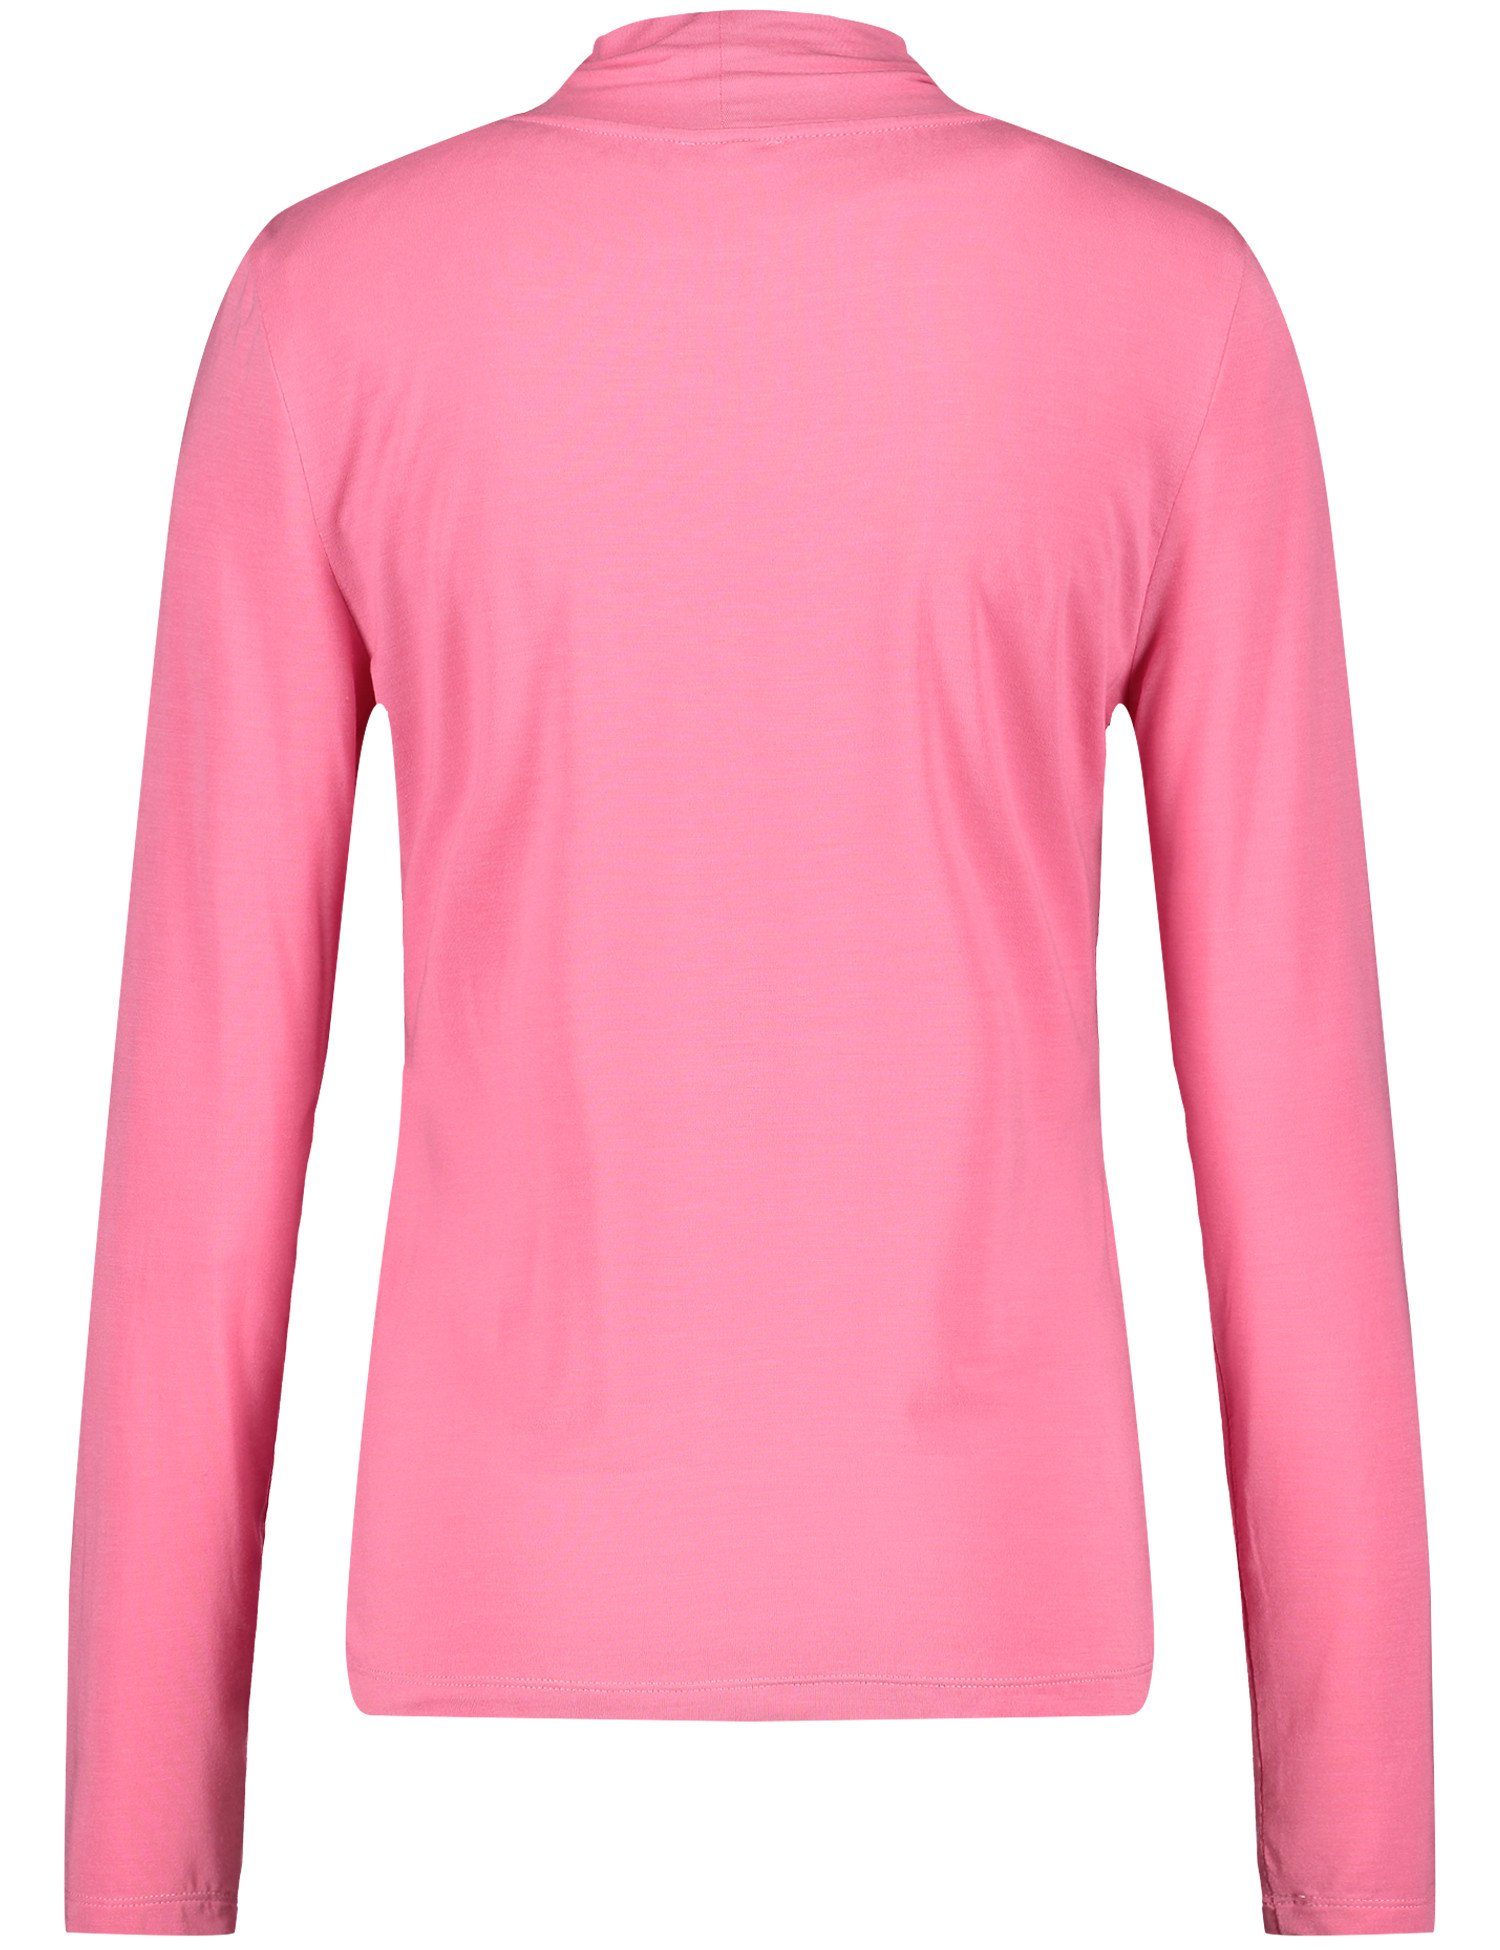 GERRY ROSE WEBER 30894 PINK T-Shirt